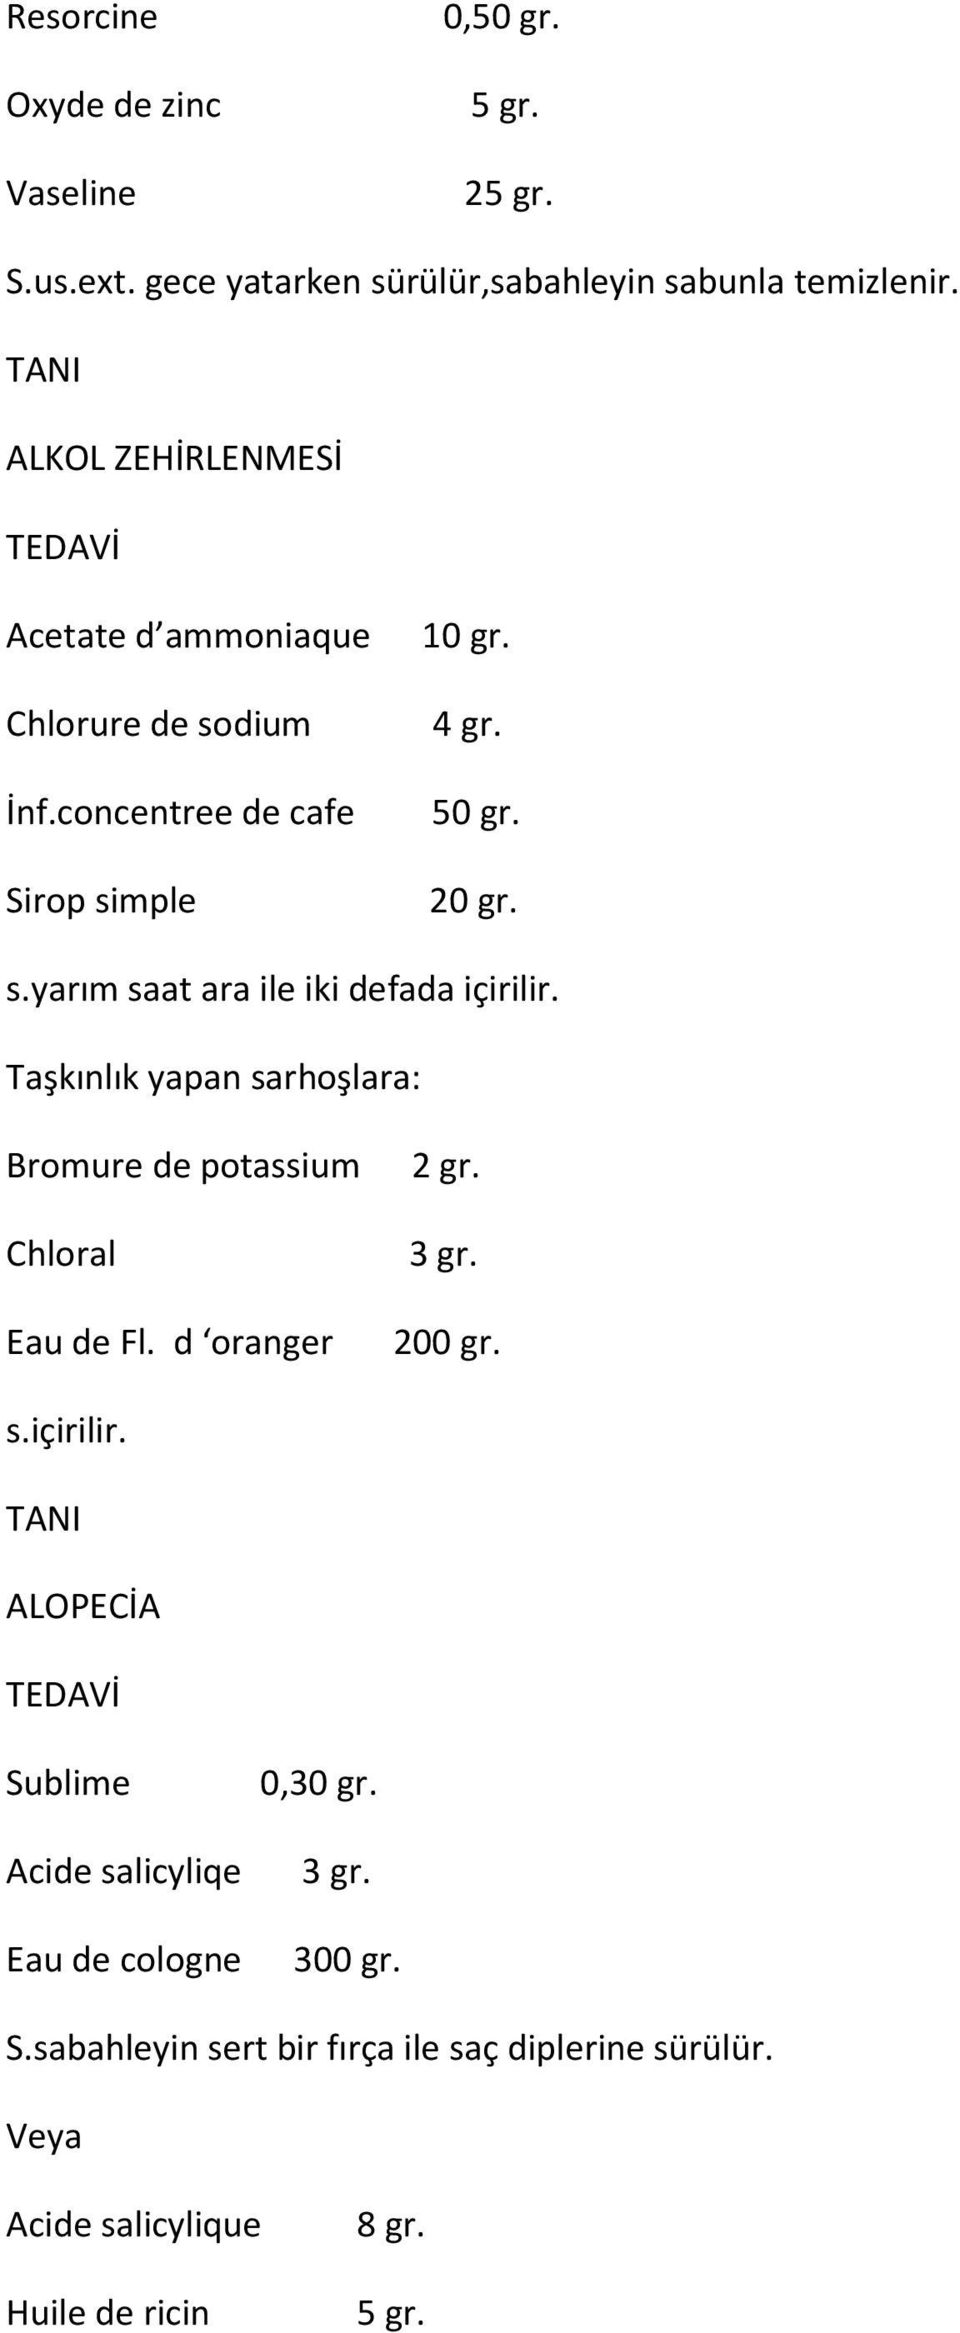 Taşkınlık yapan sarhoşlara: Bromure de potassium 2 gr. Chloral 3 gr. Eau de Fl. d oranger 200 gr. s.içirilir. ALOPECİA Sublime 0,30 gr.